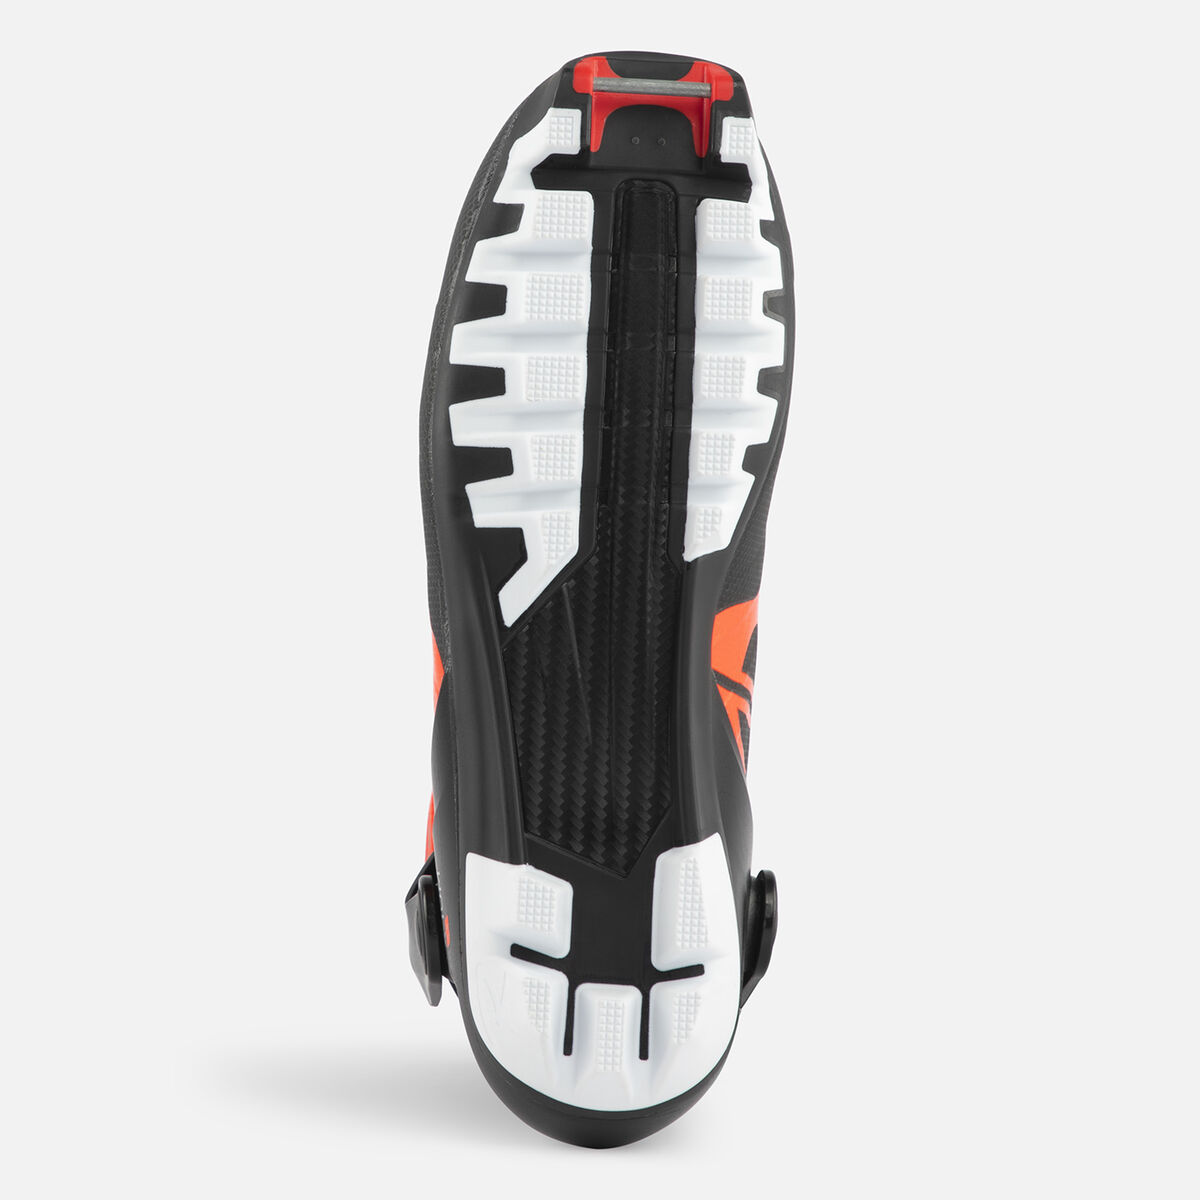 Unisex Nordic Racing Boots X-Ium Skate